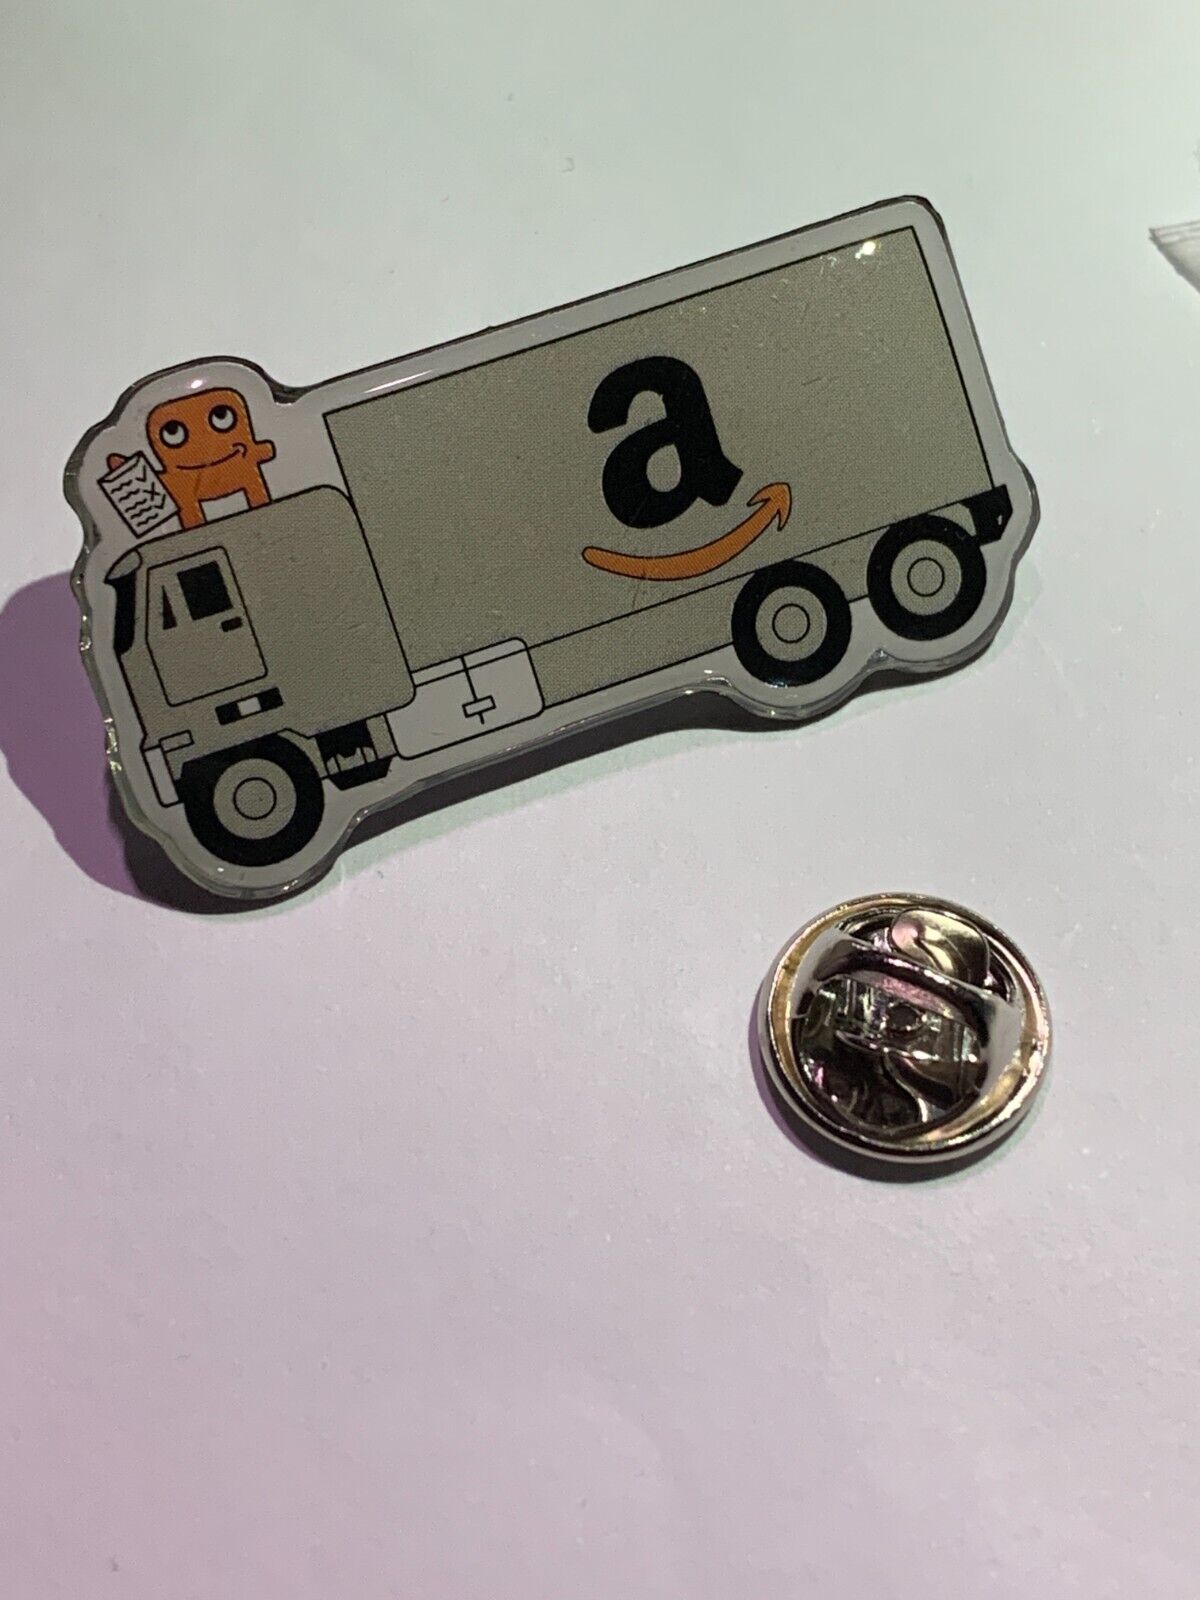 BrandNew Amazon Peccy PIN  delivery Truck Amazon Flex pins